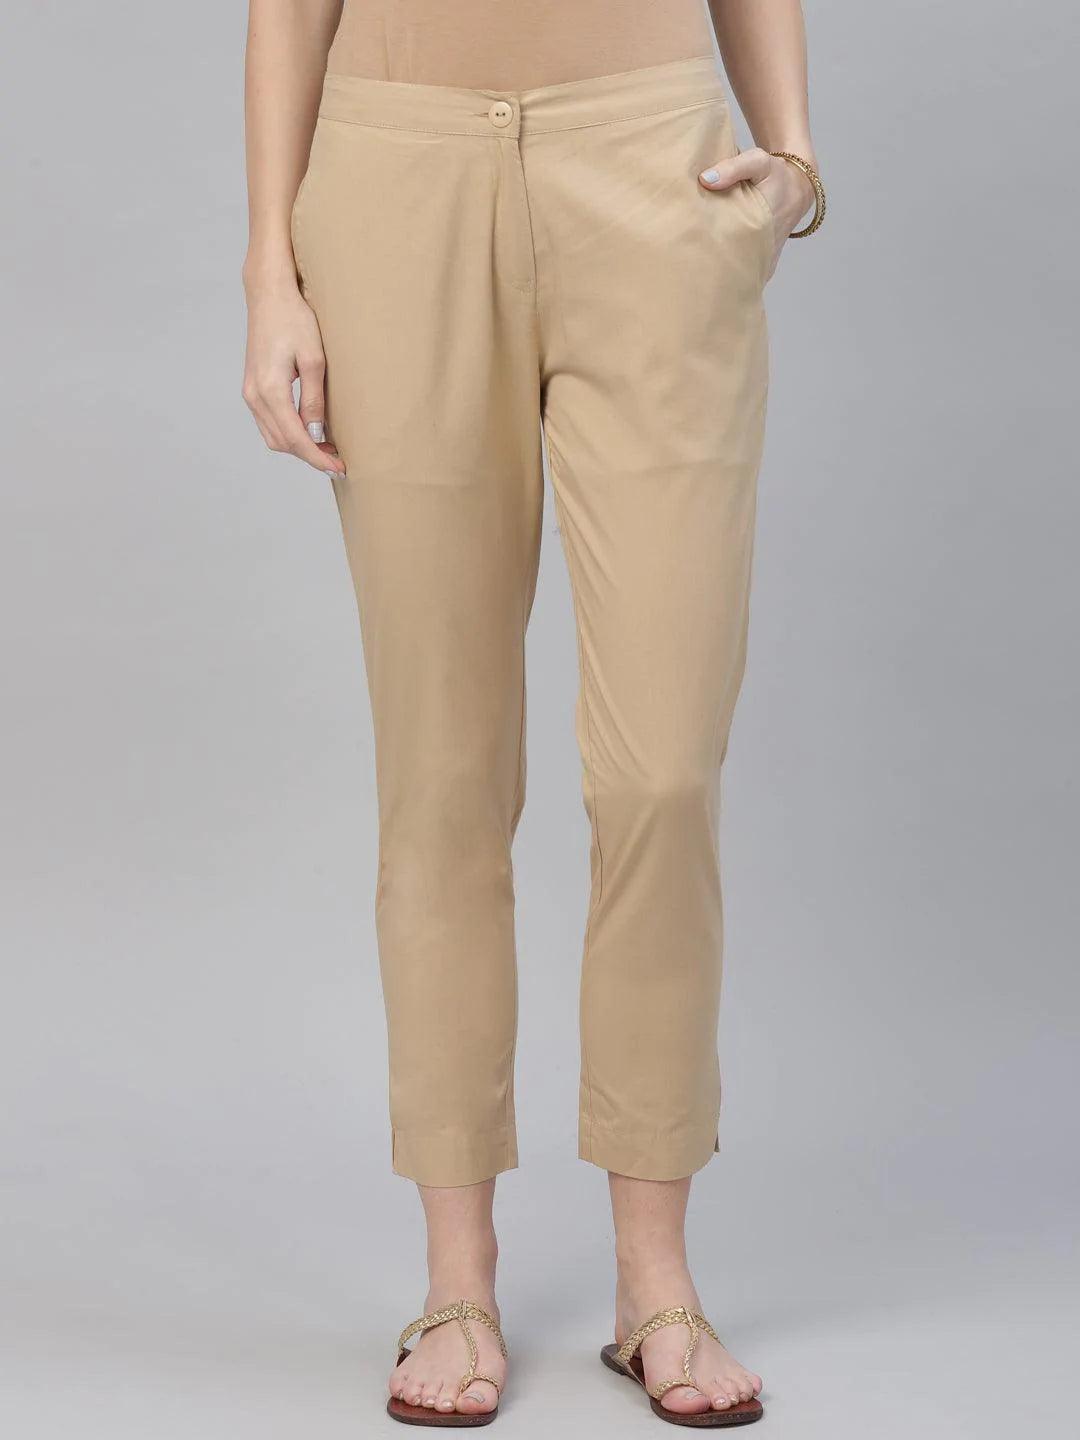 Beige Solid Cotton Trousers - ShopLibas